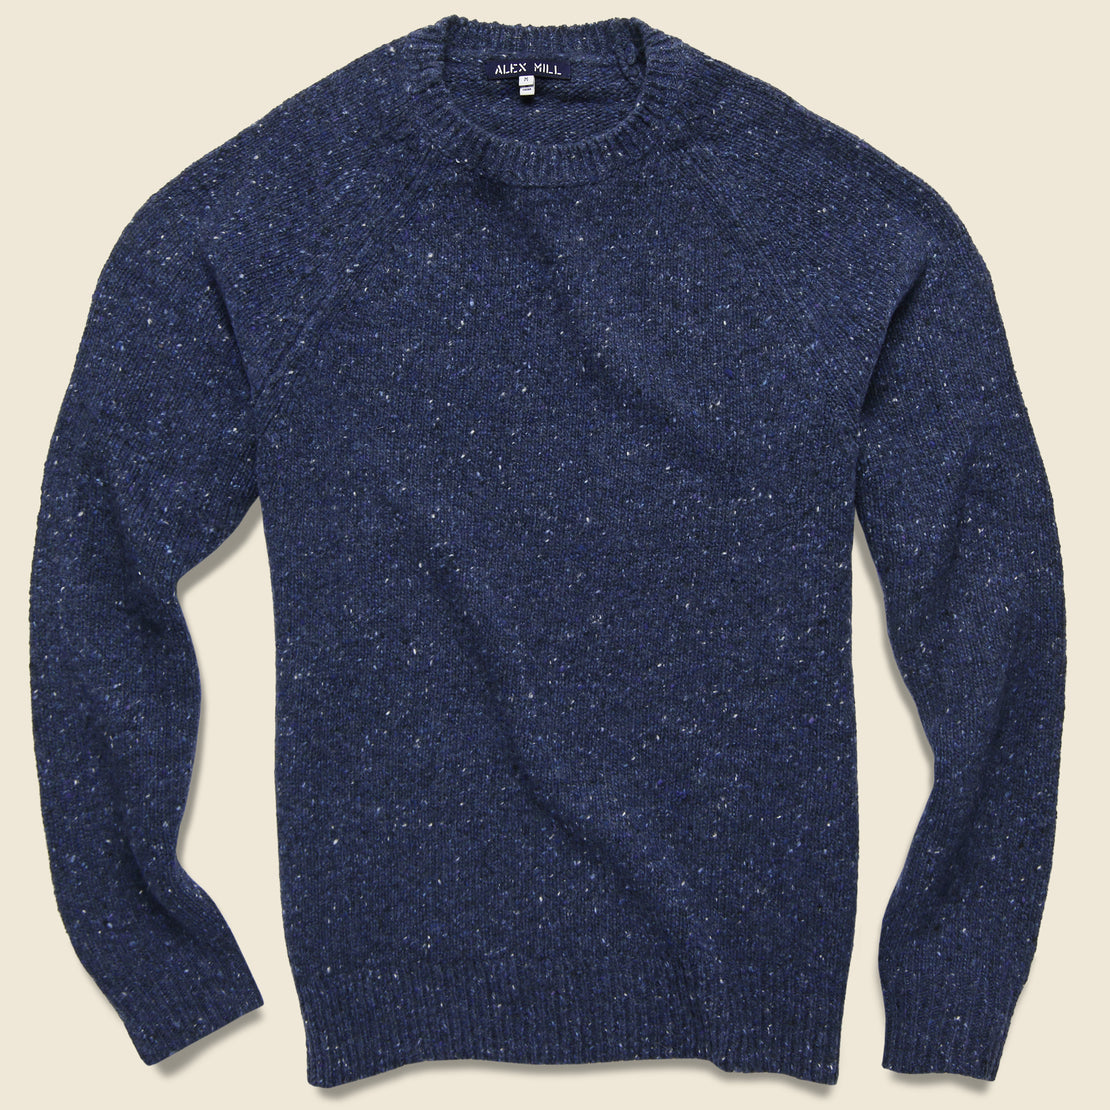 Alex Mill Alpaca Wool Donegal Crew Sweater - Fisherman Blue